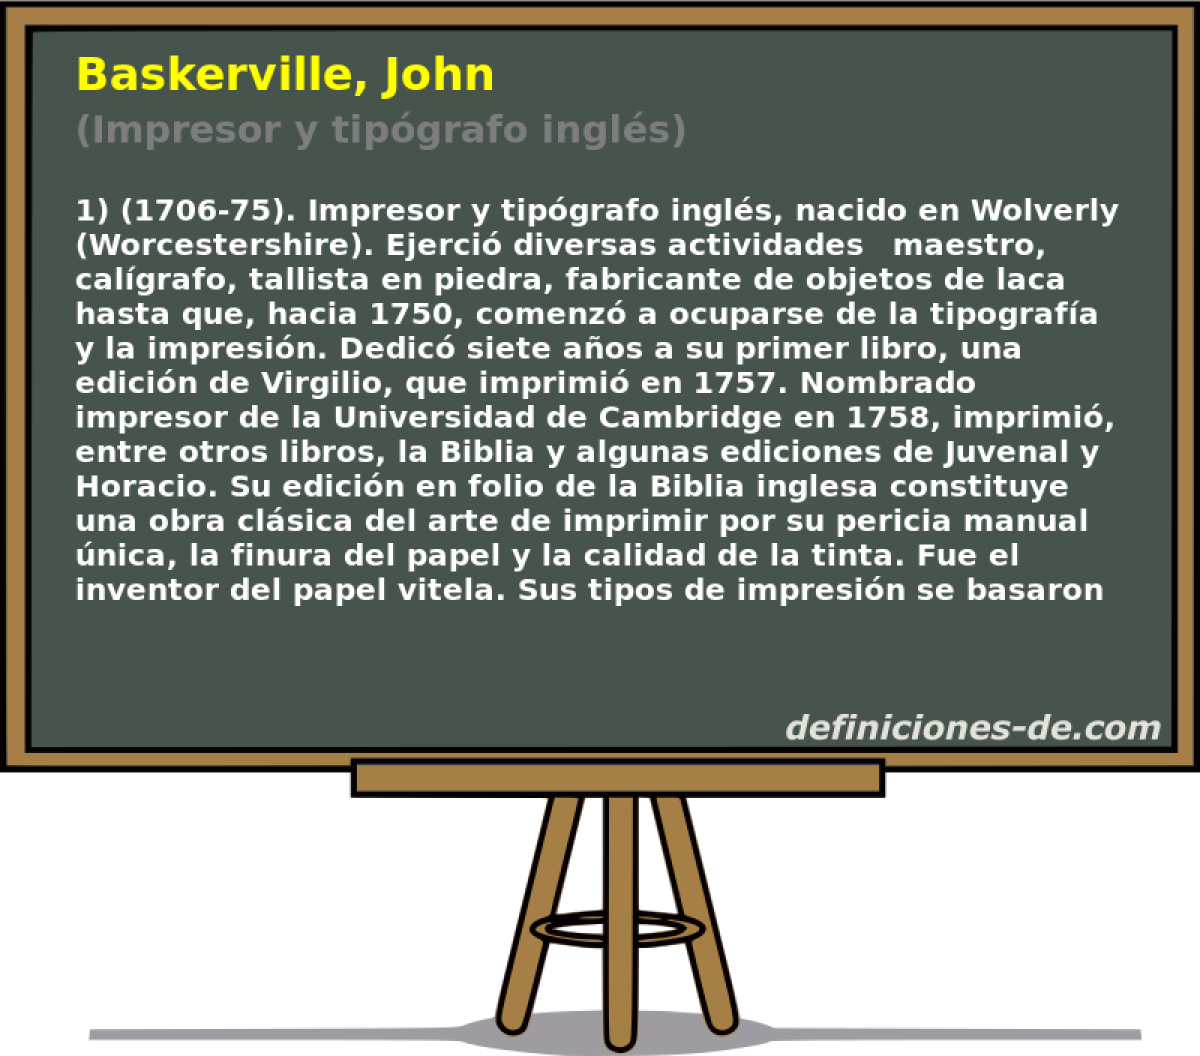 Baskerville, John (Impresor y tipgrafo ingls)